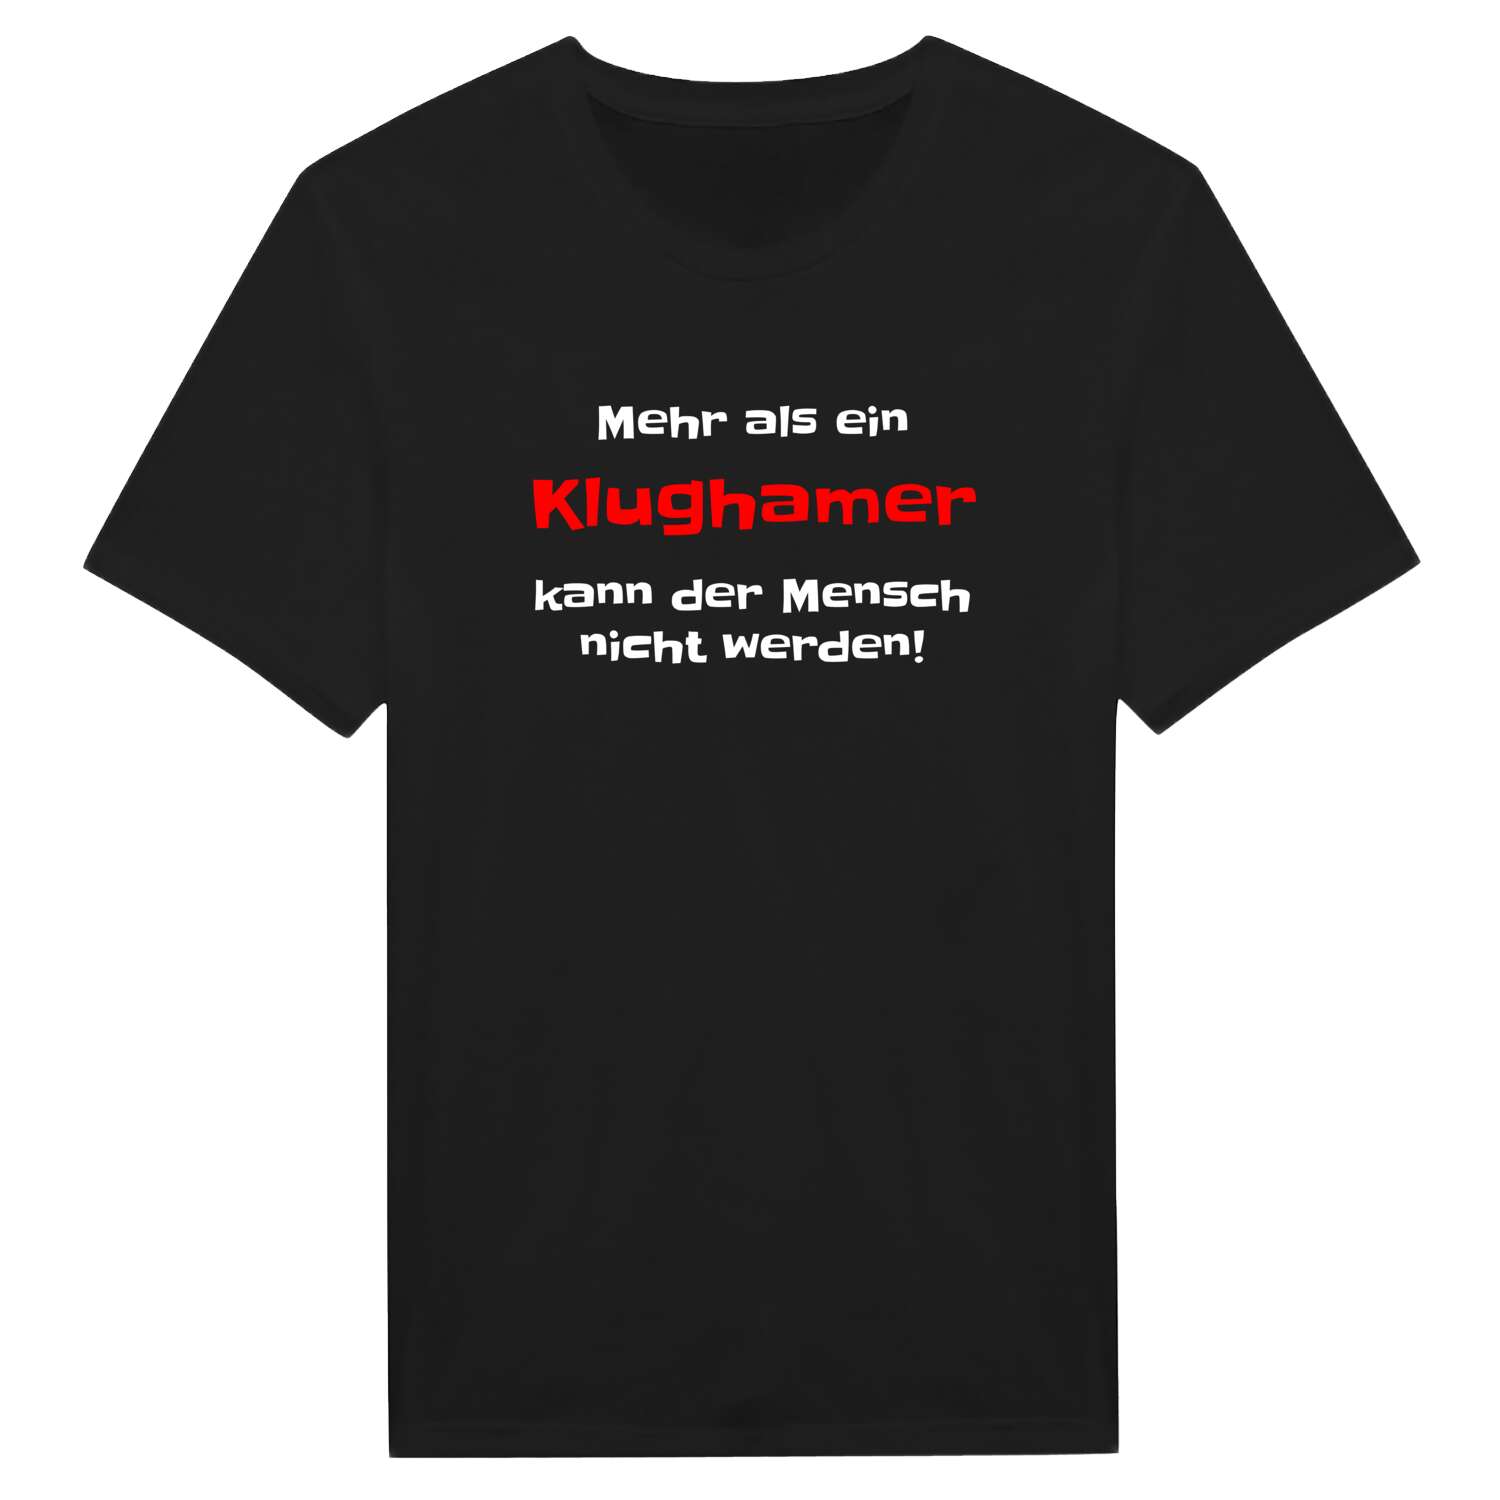 Klugham T-Shirt »Mehr als ein«